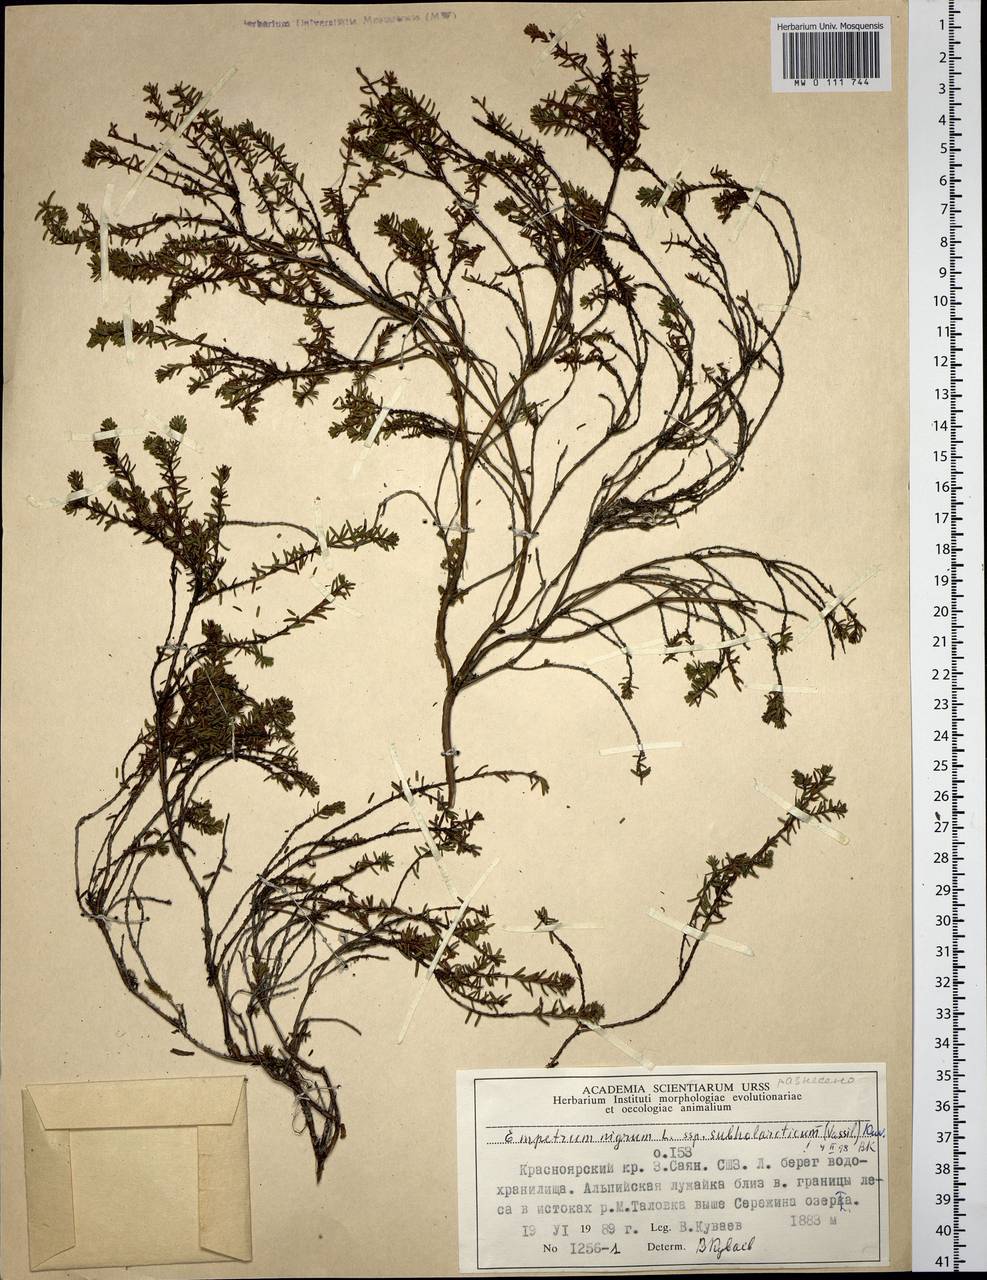 Empetrum nigrum subsp. subholarcticum (V. N. Vassil.) Kuvaev, Siberia, Altai & Sayany Mountains (S2) (Russia)